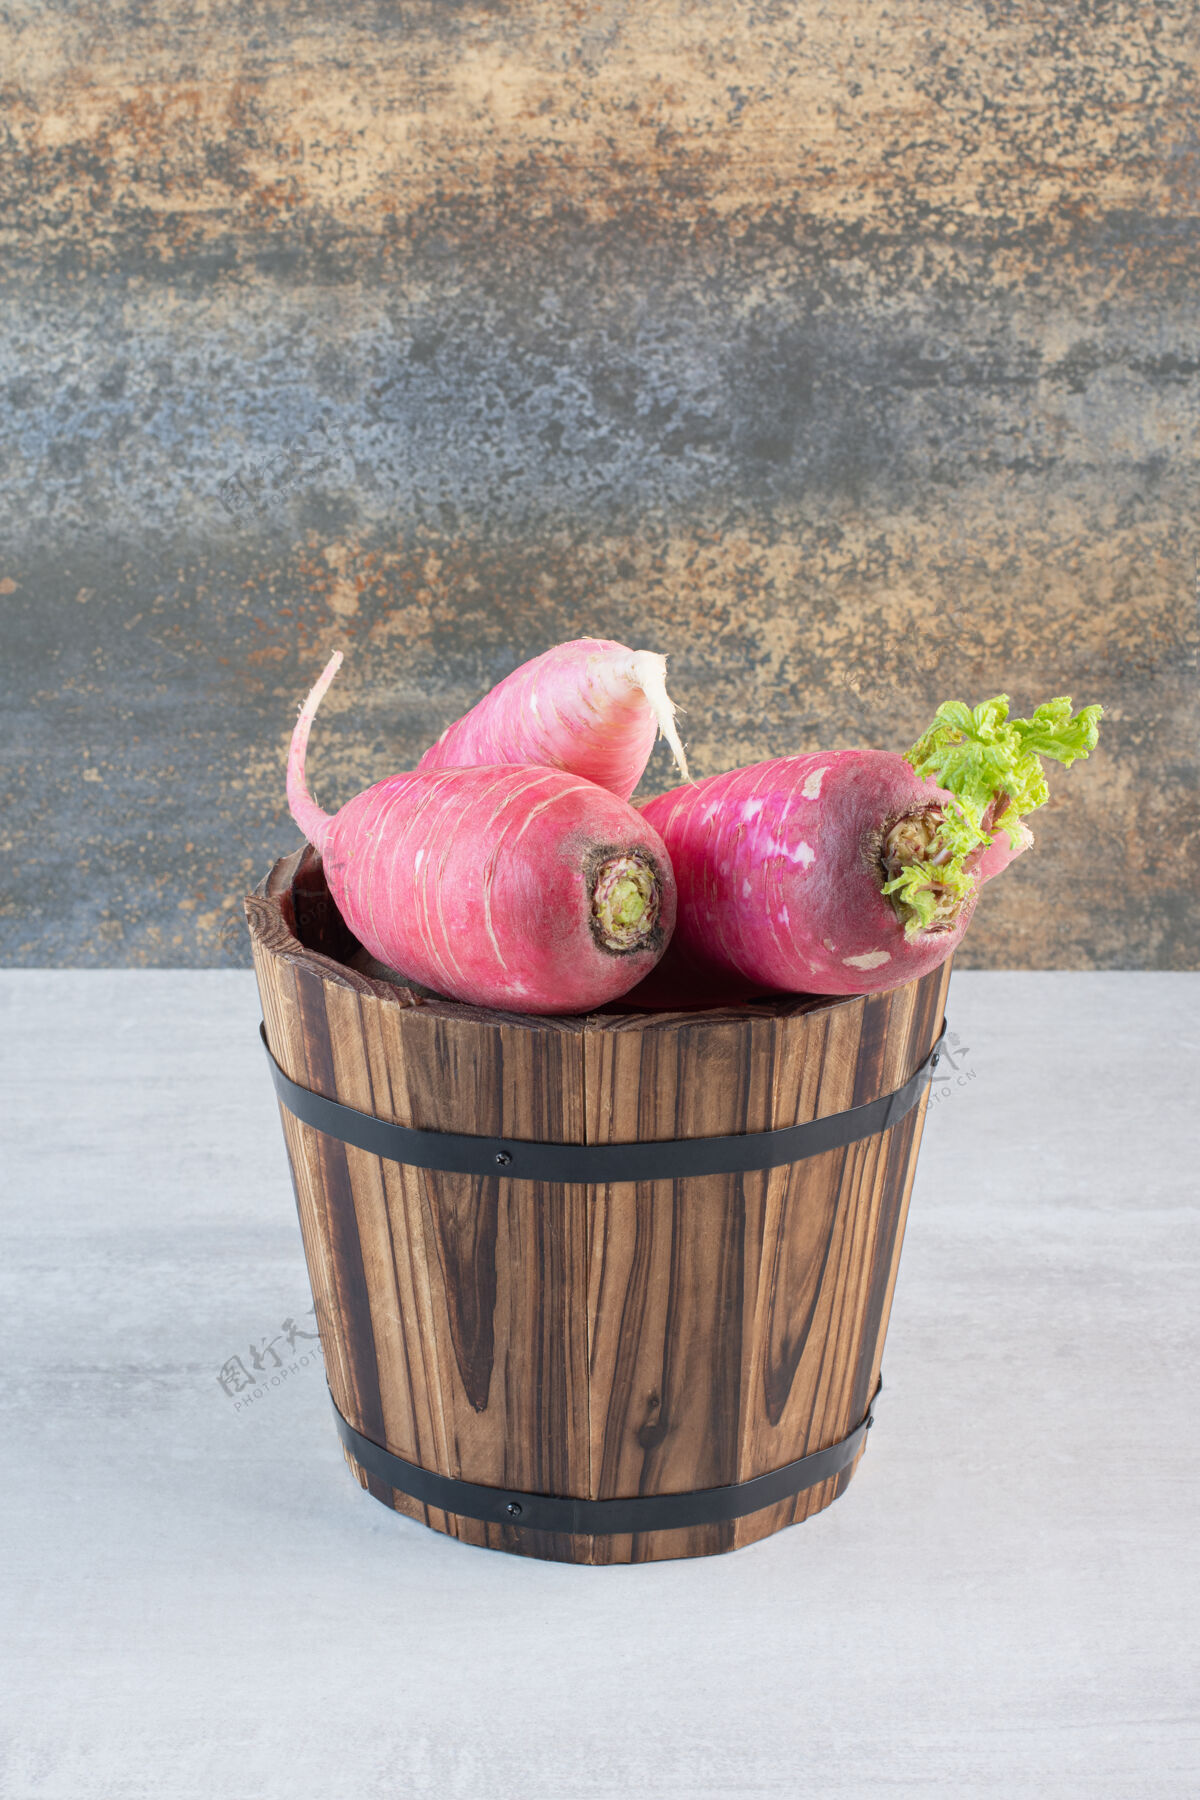 蔬菜新鲜的红萝卜在木桶里高品质的照片有机桶装新鲜